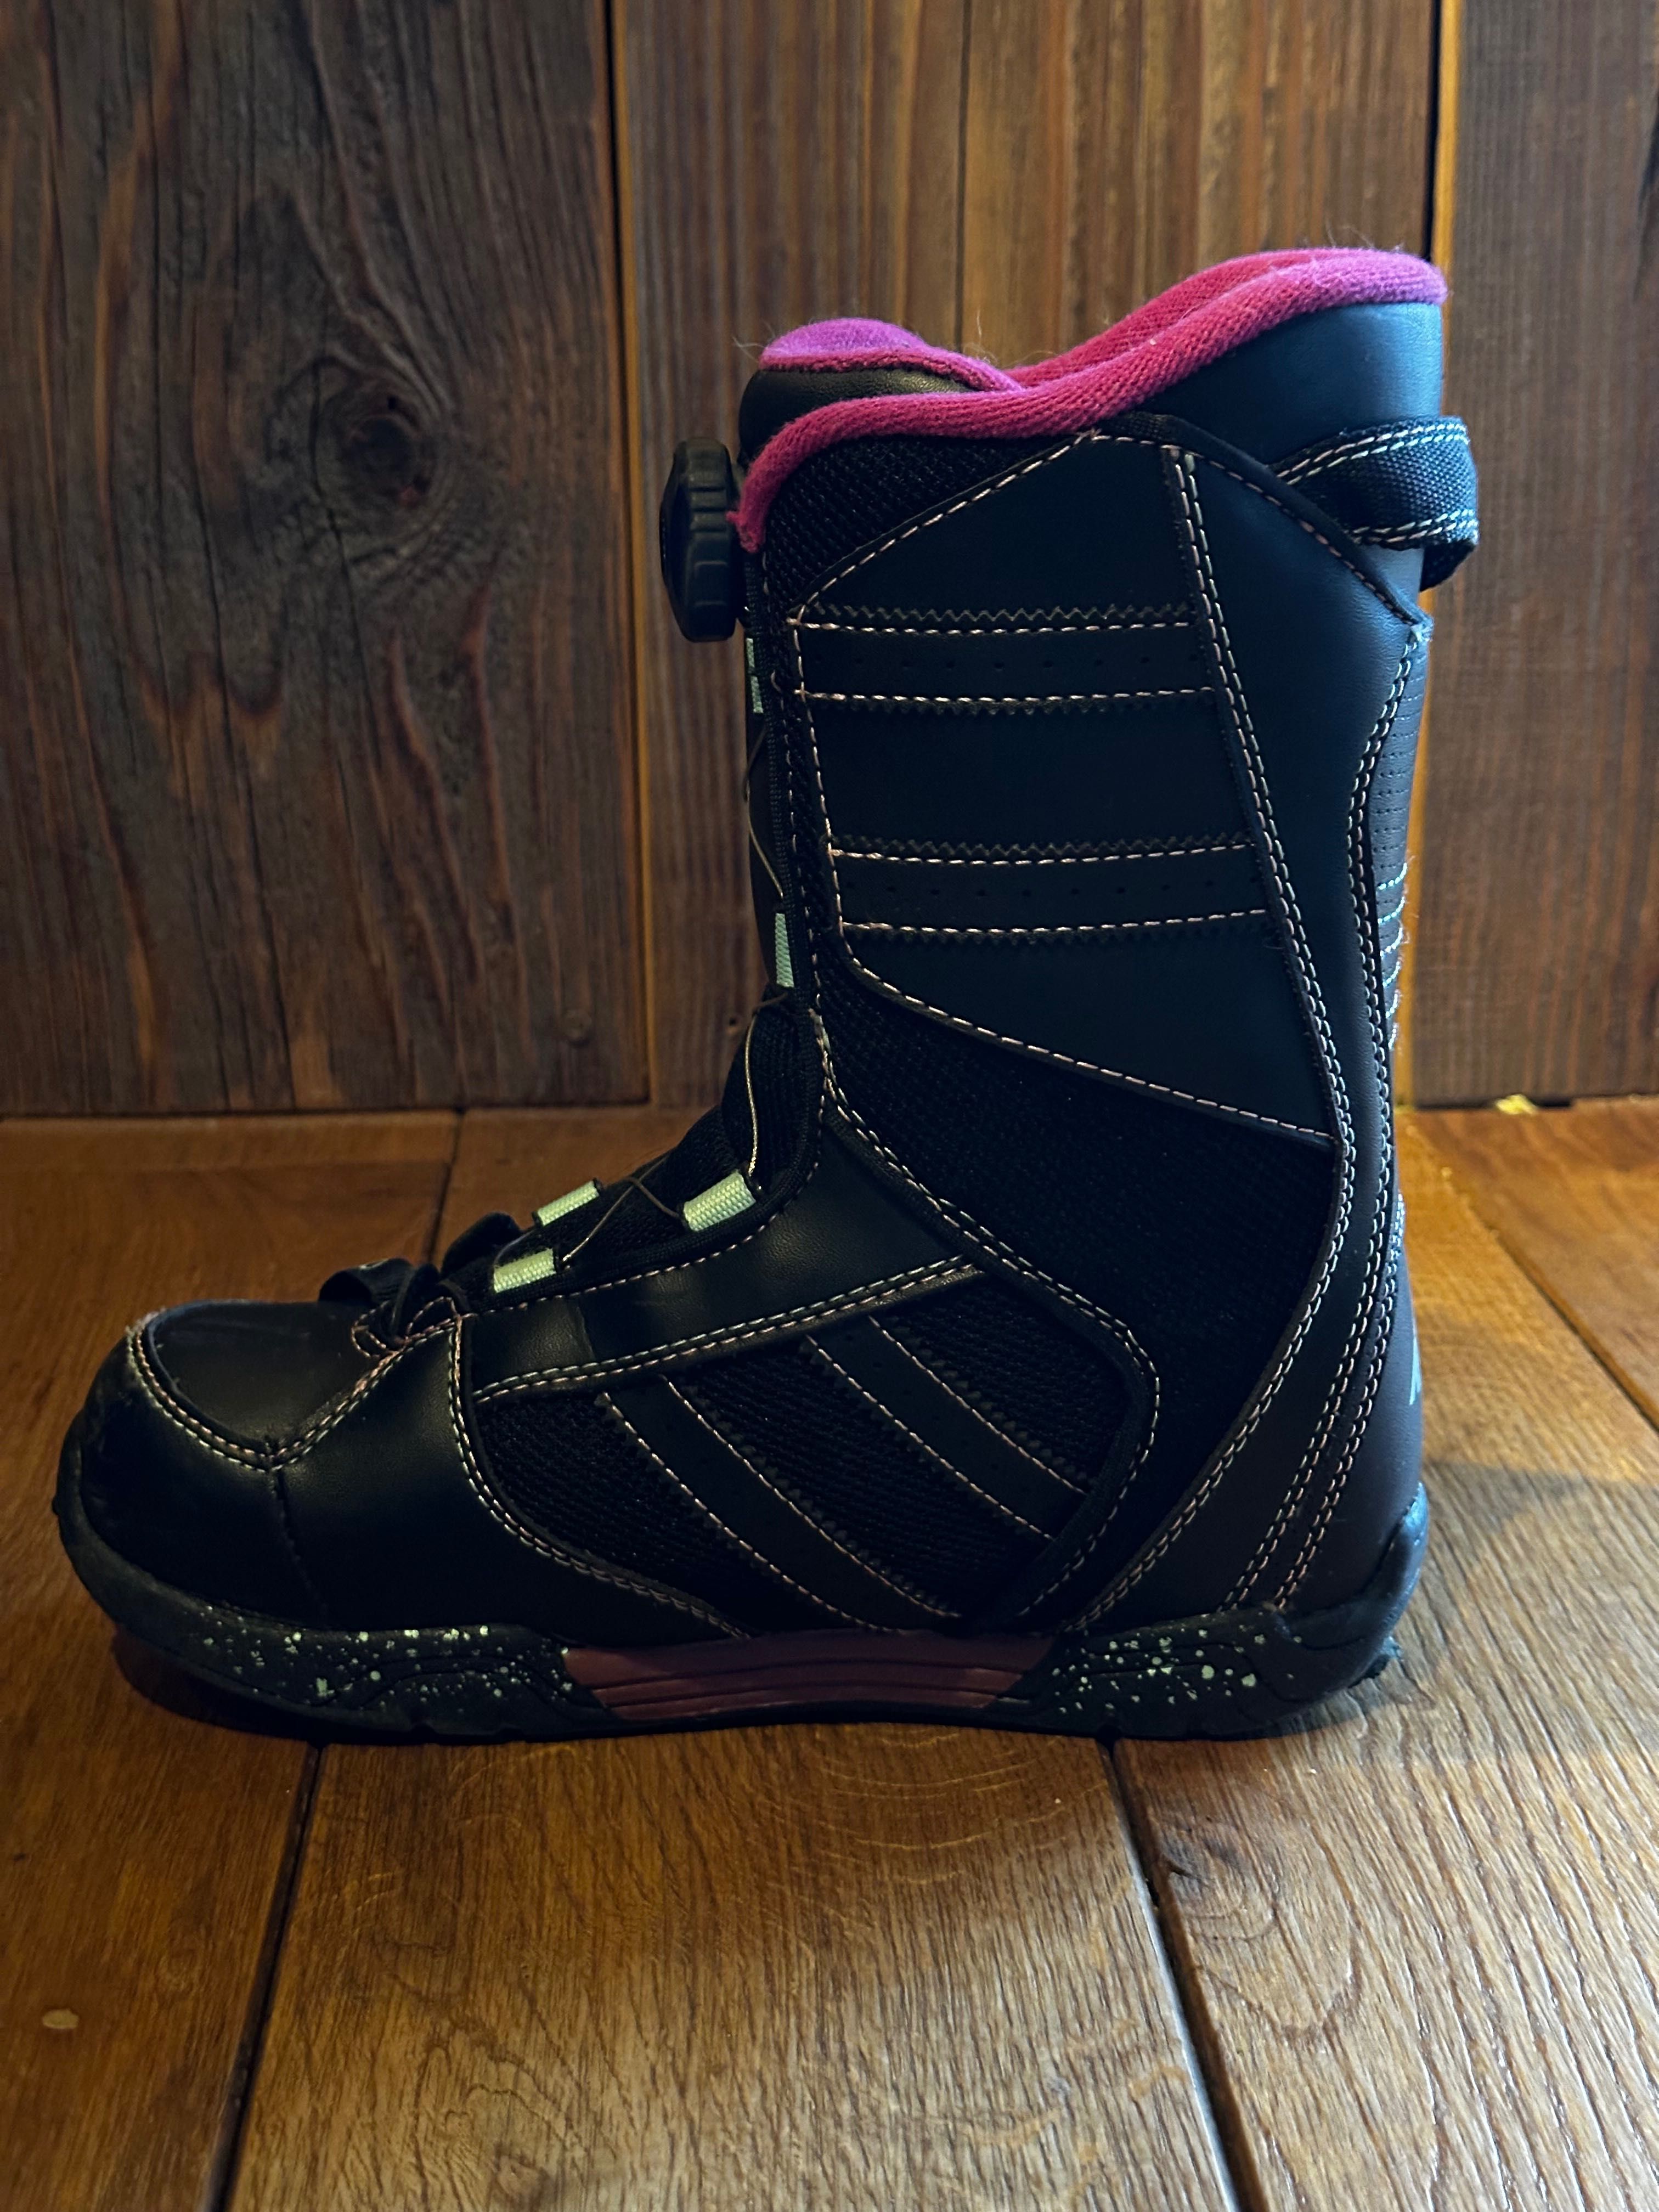 Buty Snowboardowe K2 dziecięce boa